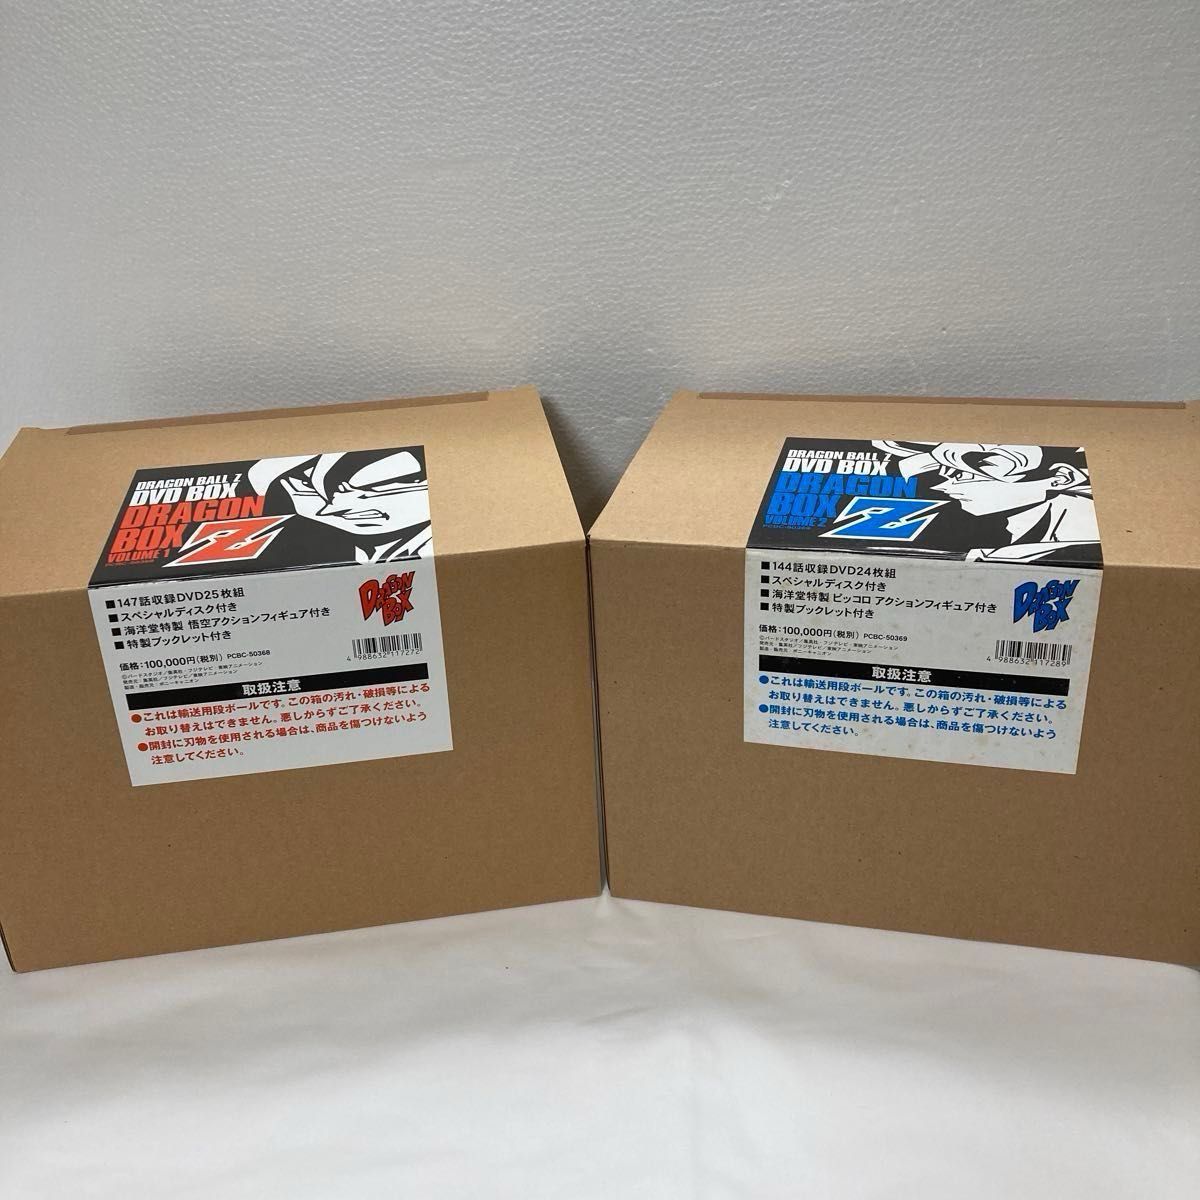 ドラゴンボールZ DVD-BOX DRAGON BOX Z編 1&2